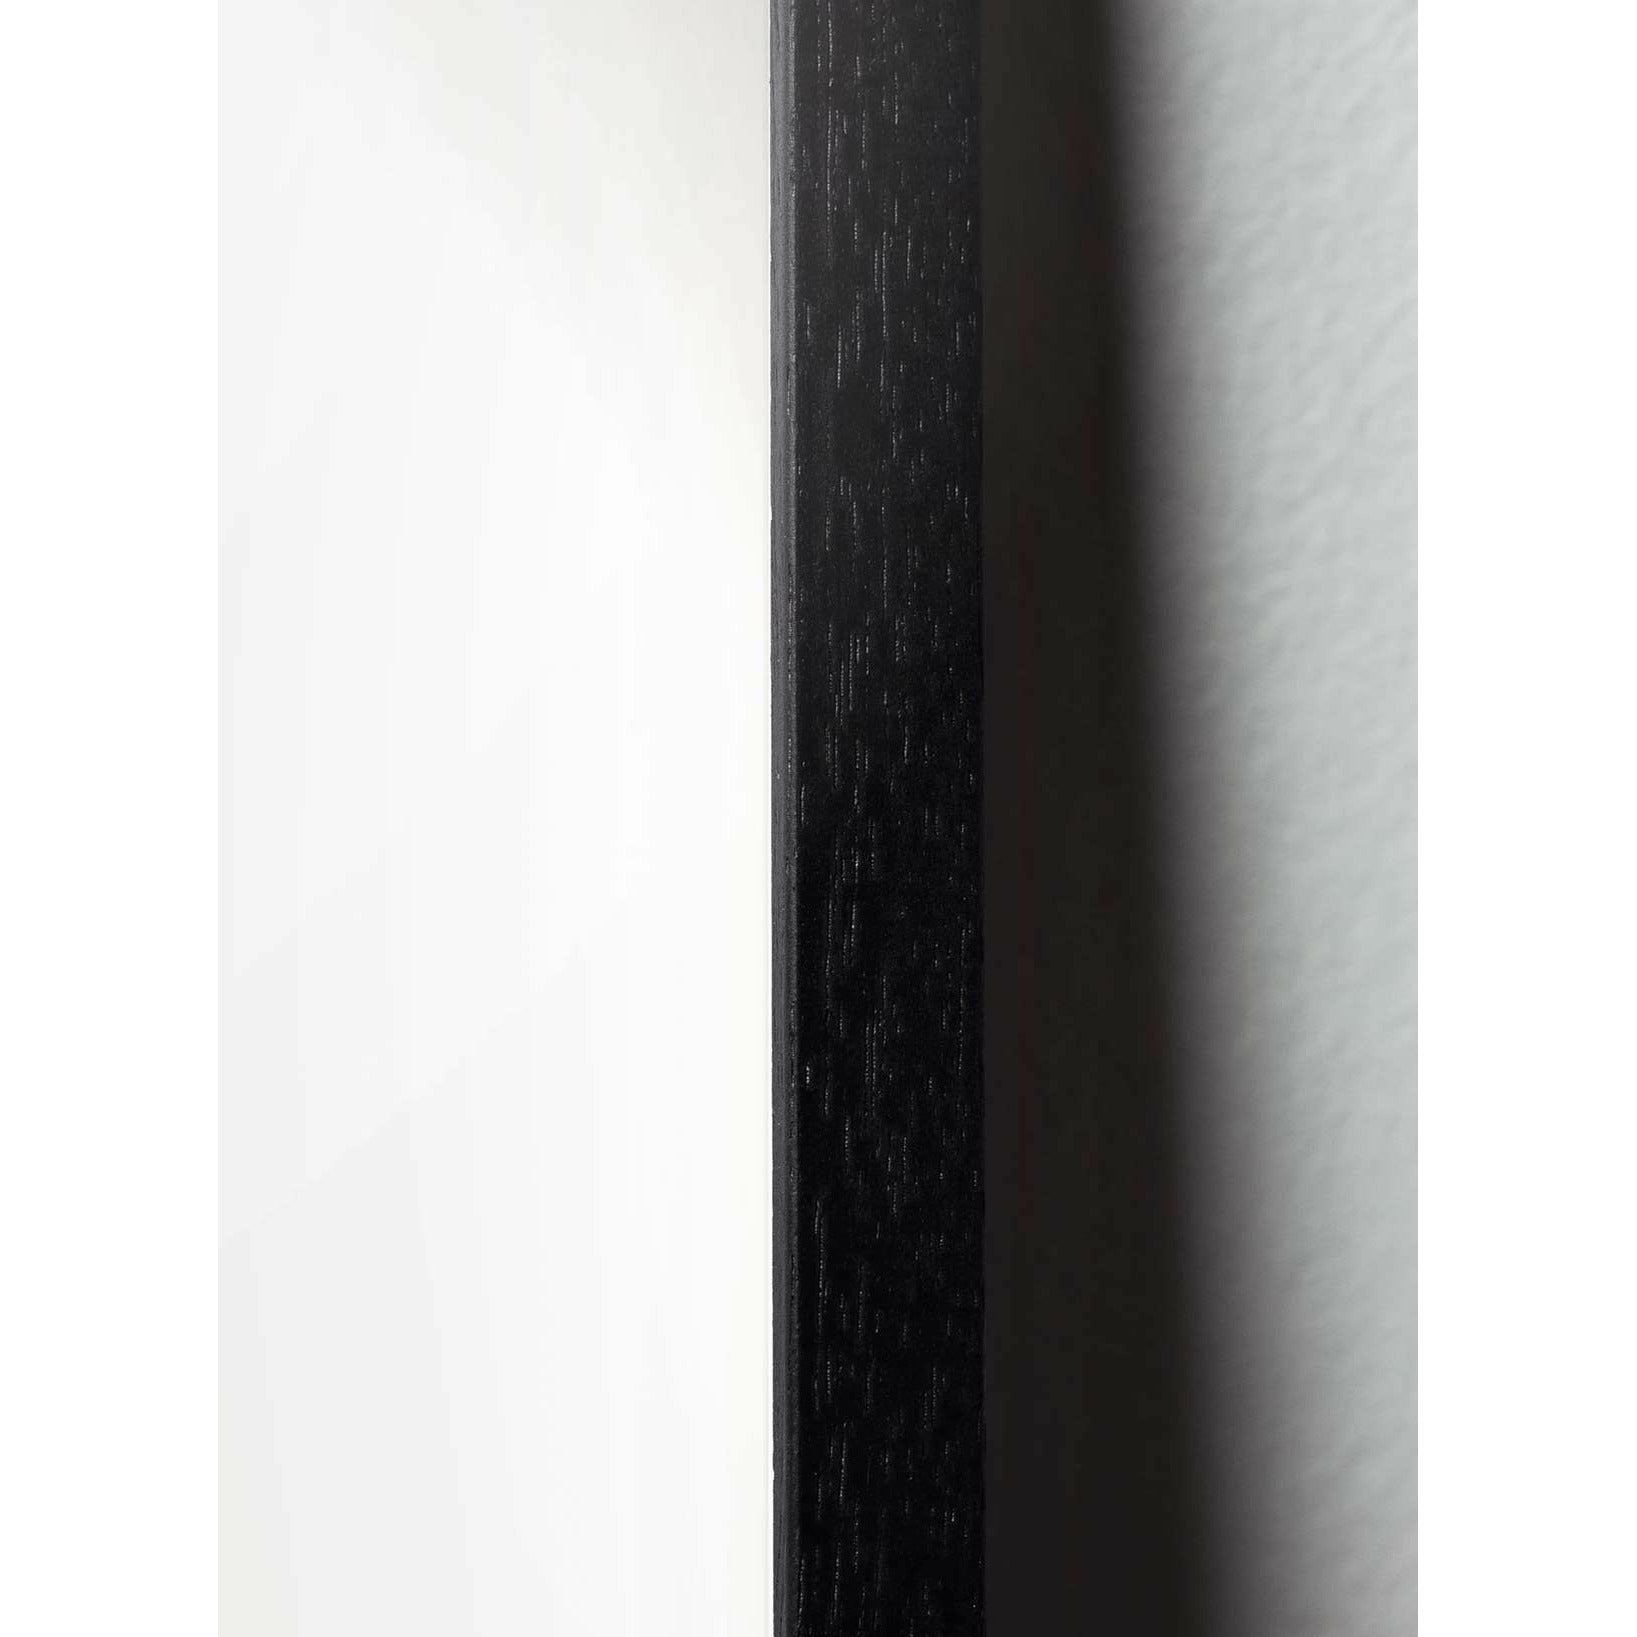 Plakát s labuťovou sponou s labuťovou sponou, rám v černém lakovaném dřevu 50x70 cm, růžové pozadí